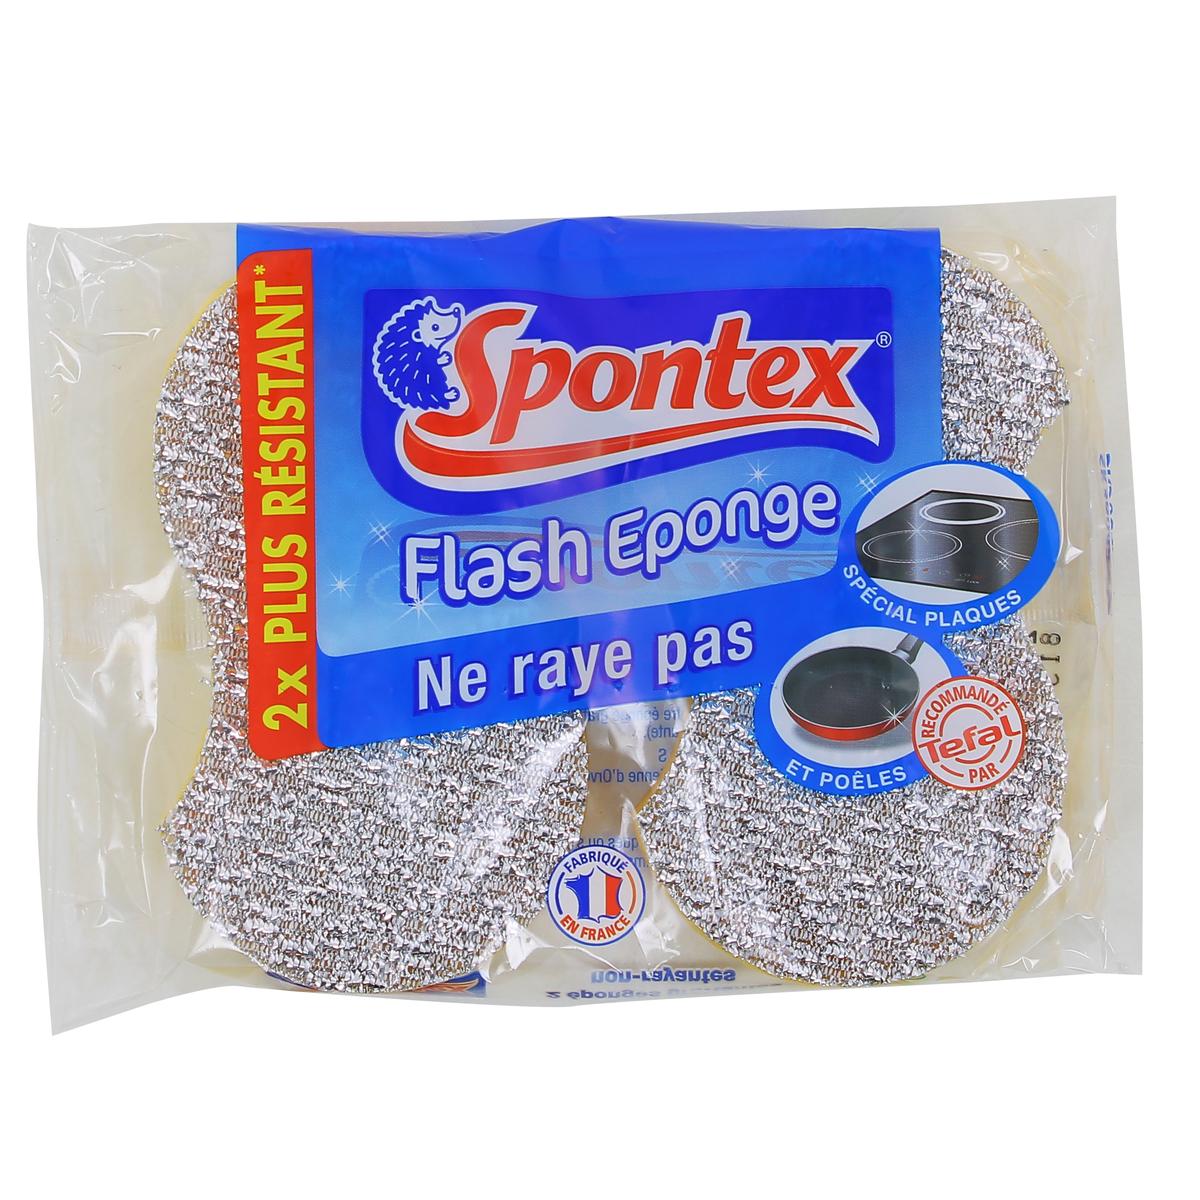 SPONTEX - Gratte-Eponge Stop-Graisse - 12 pack de 2 éponges